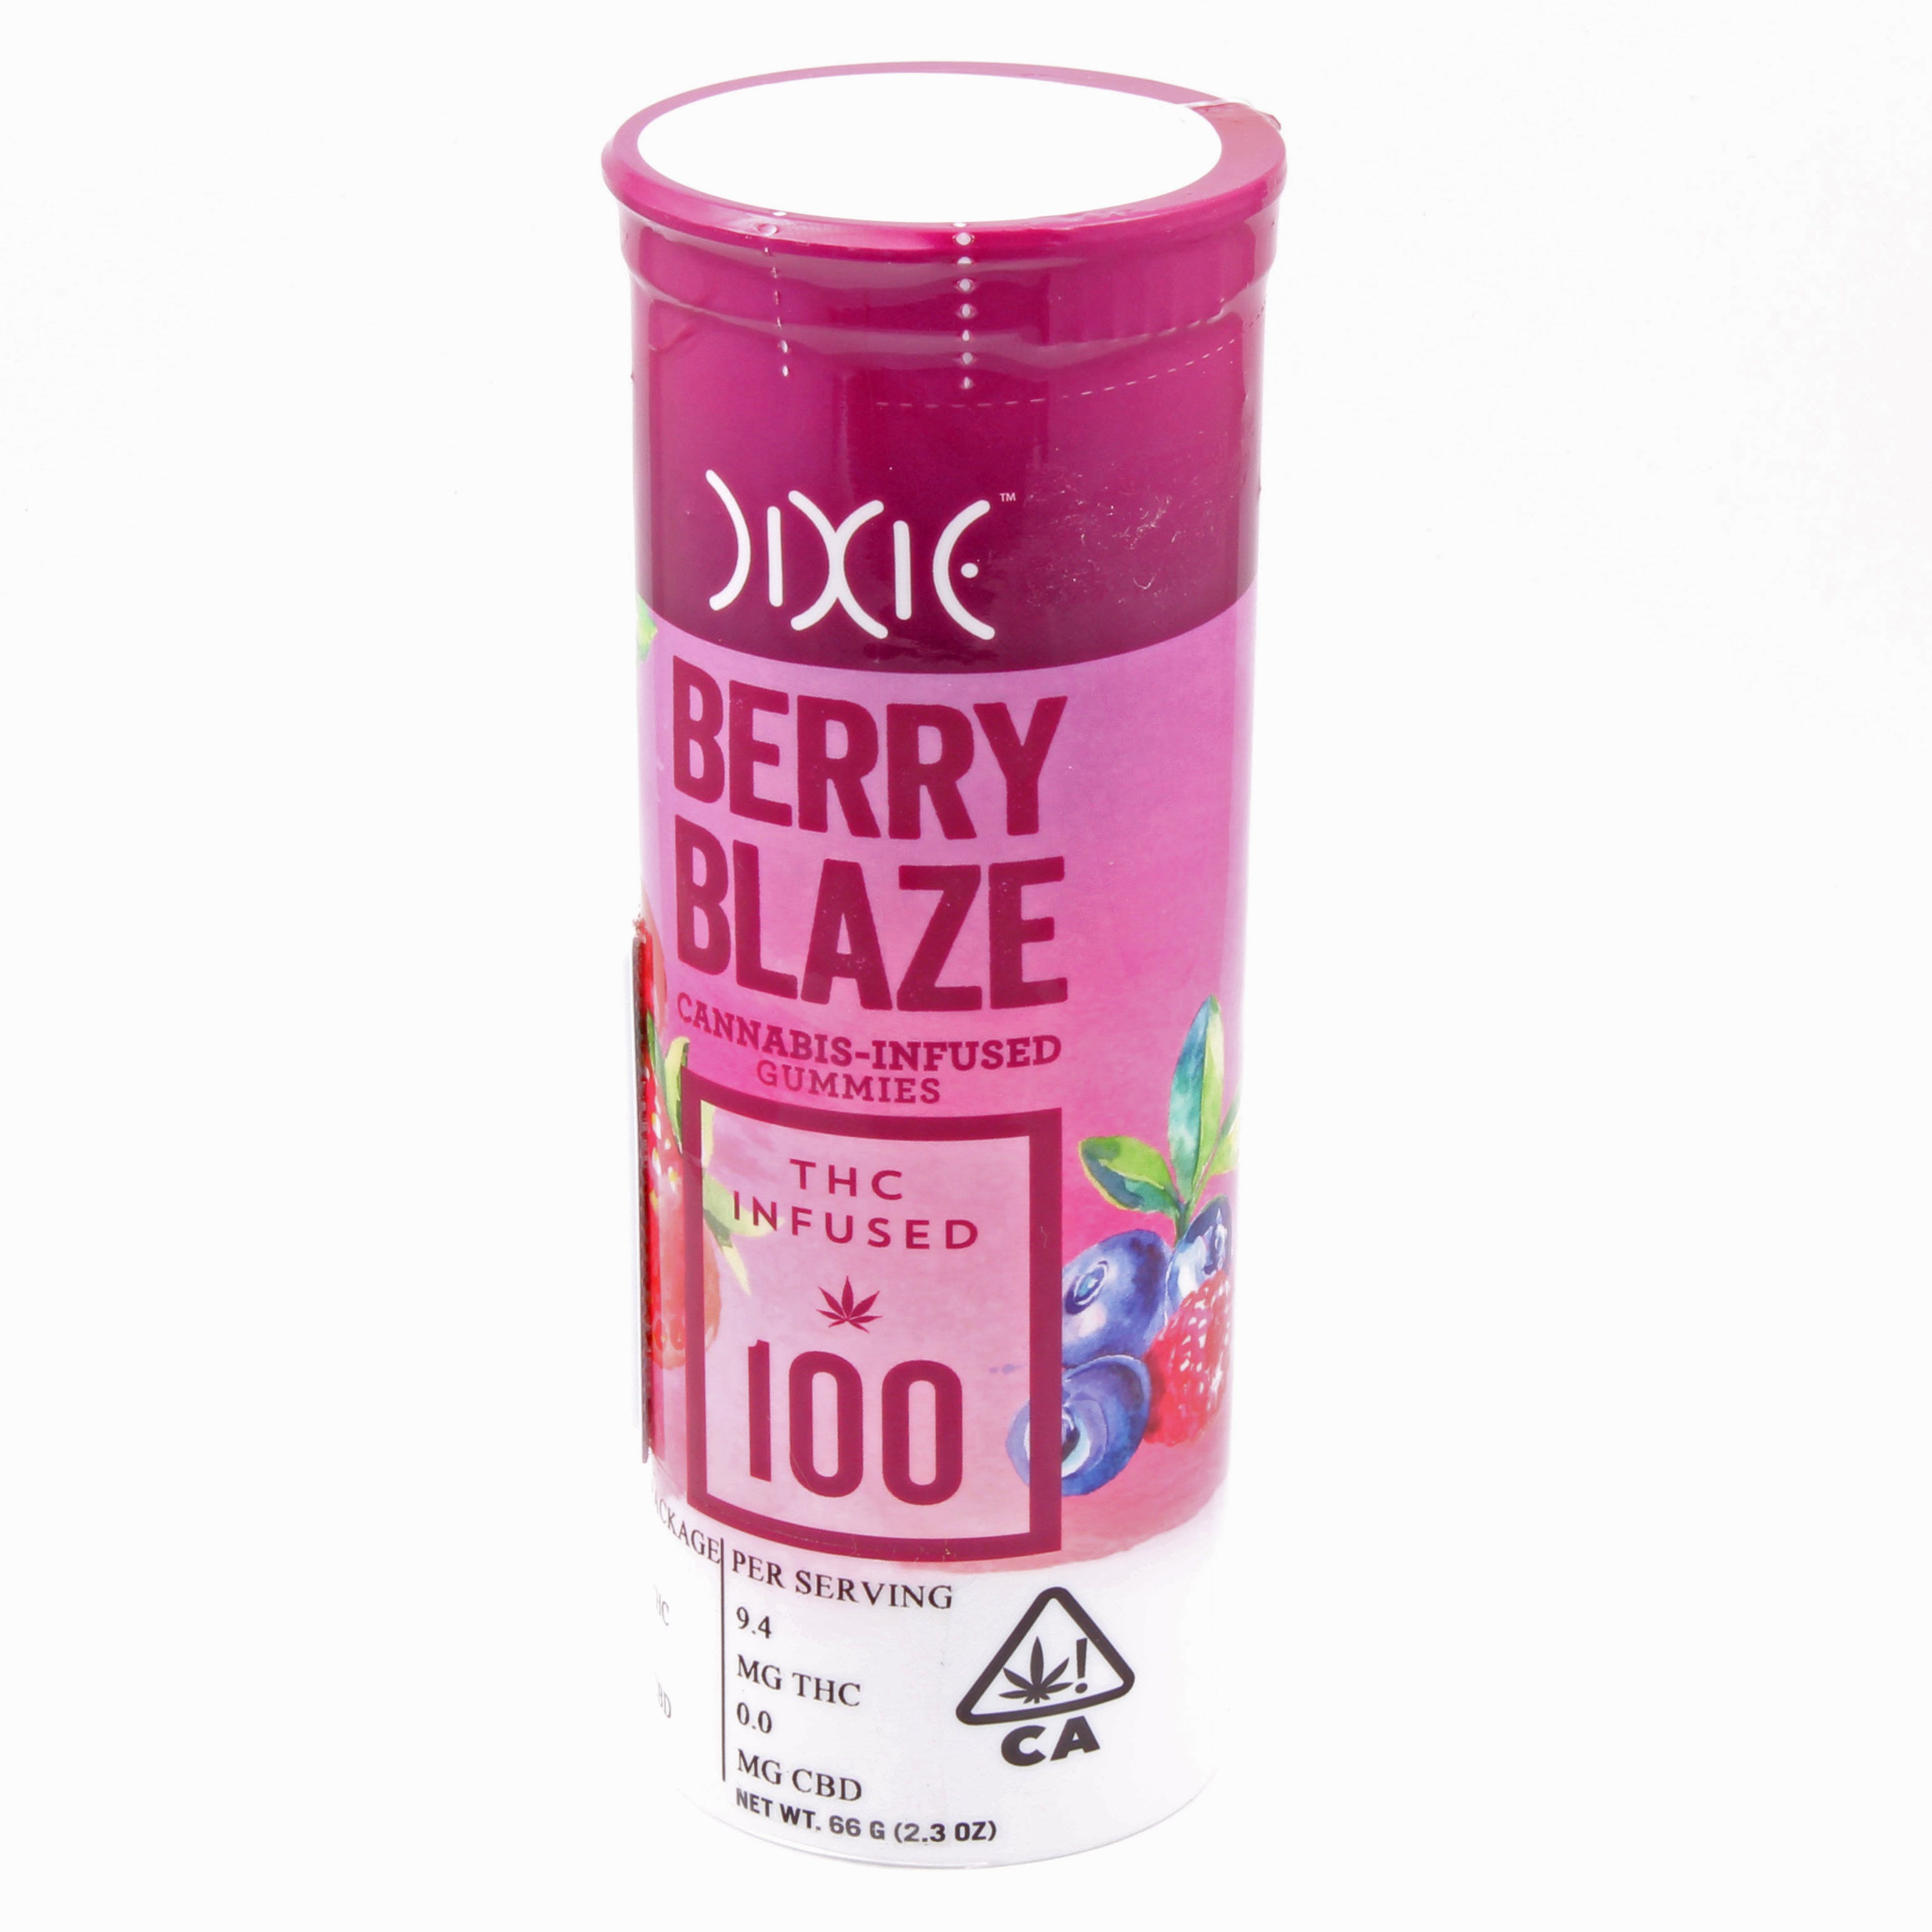 Dixie: Berry Blaze gummies 100mg